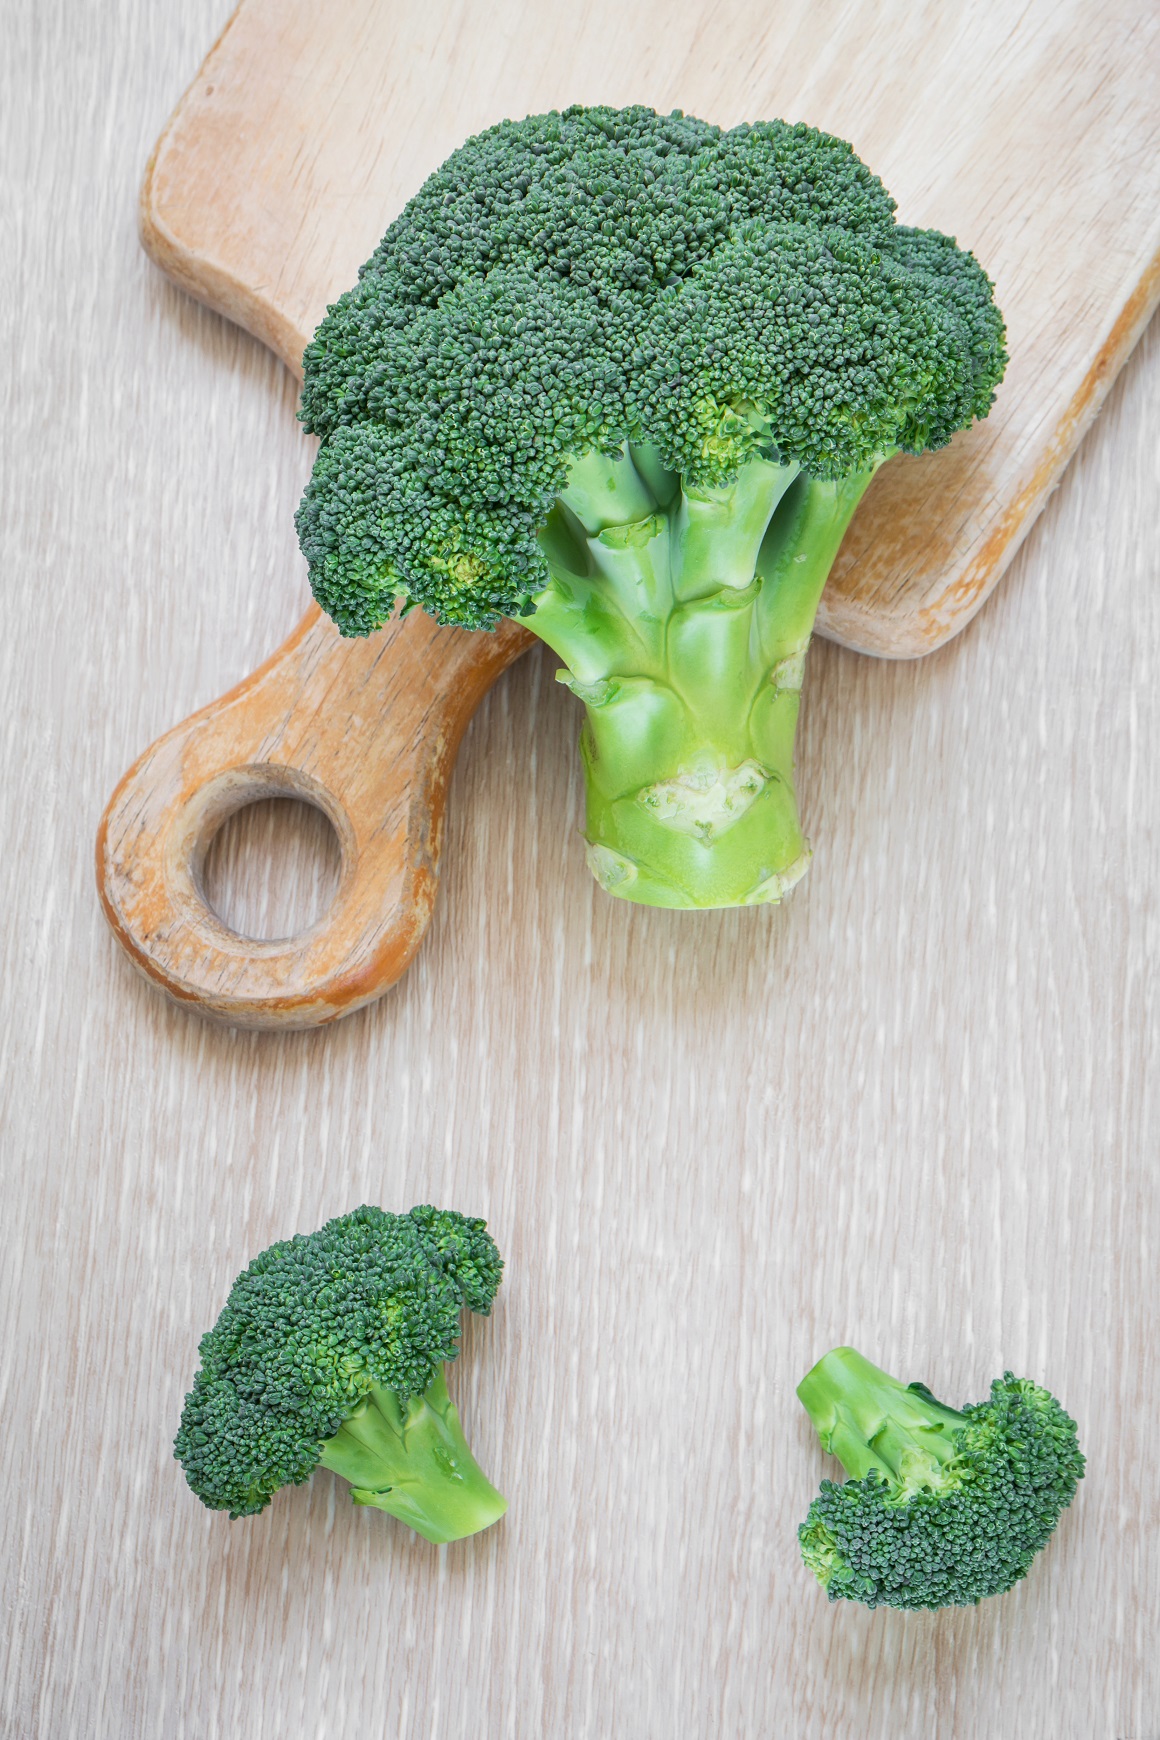 Pola šalice kuhane brokule ima oko 50 mg vitamina C